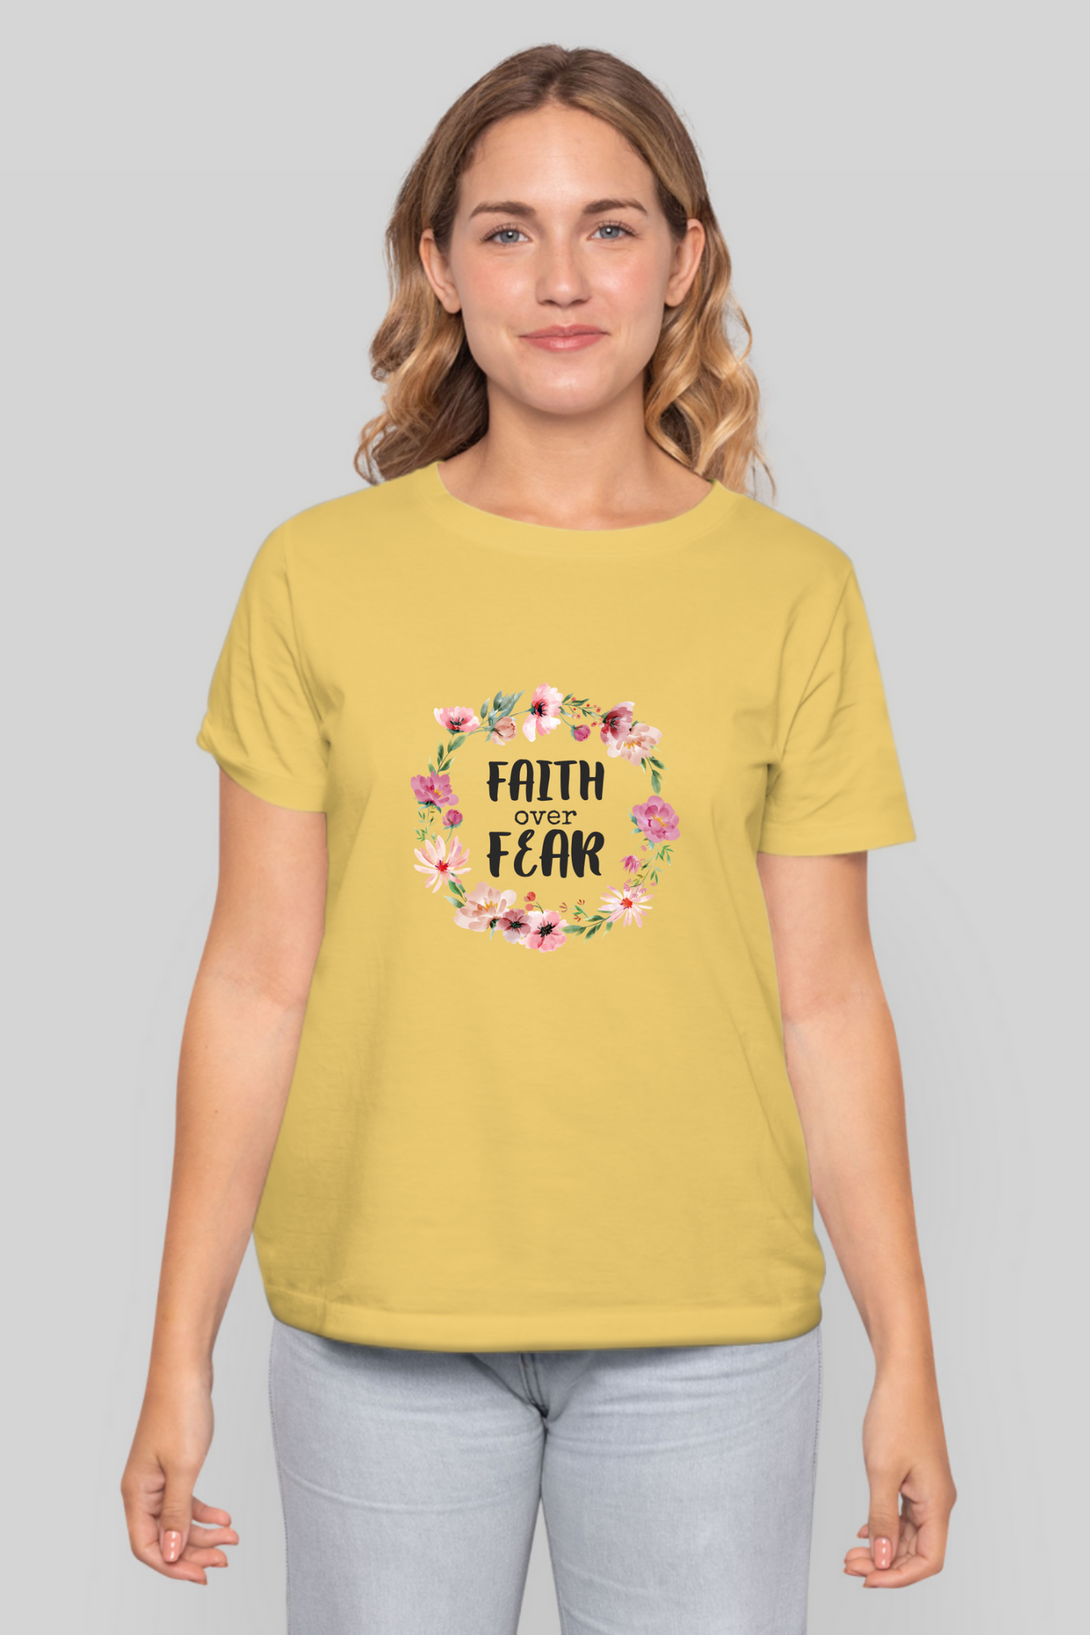 Faith Over Fear Printed T-Shirt For Women - WowWaves - 11